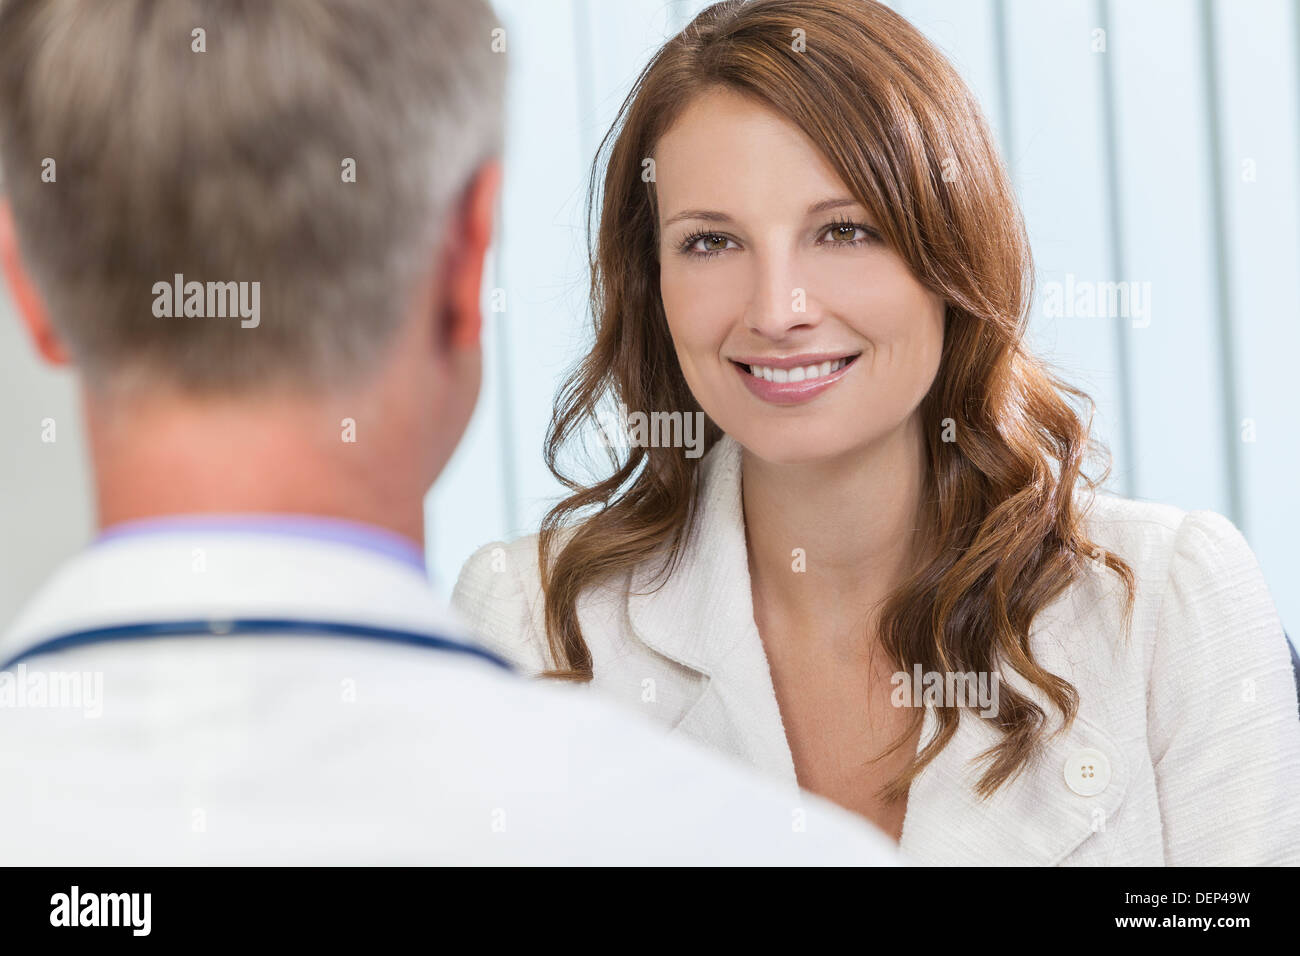 Sorridenti donna di mezza età paziente o collega riunione appuntamento per un colloquio di consulenza con connettore maschio di tipo medico ospedale ufficio di chirurgia Foto Stock